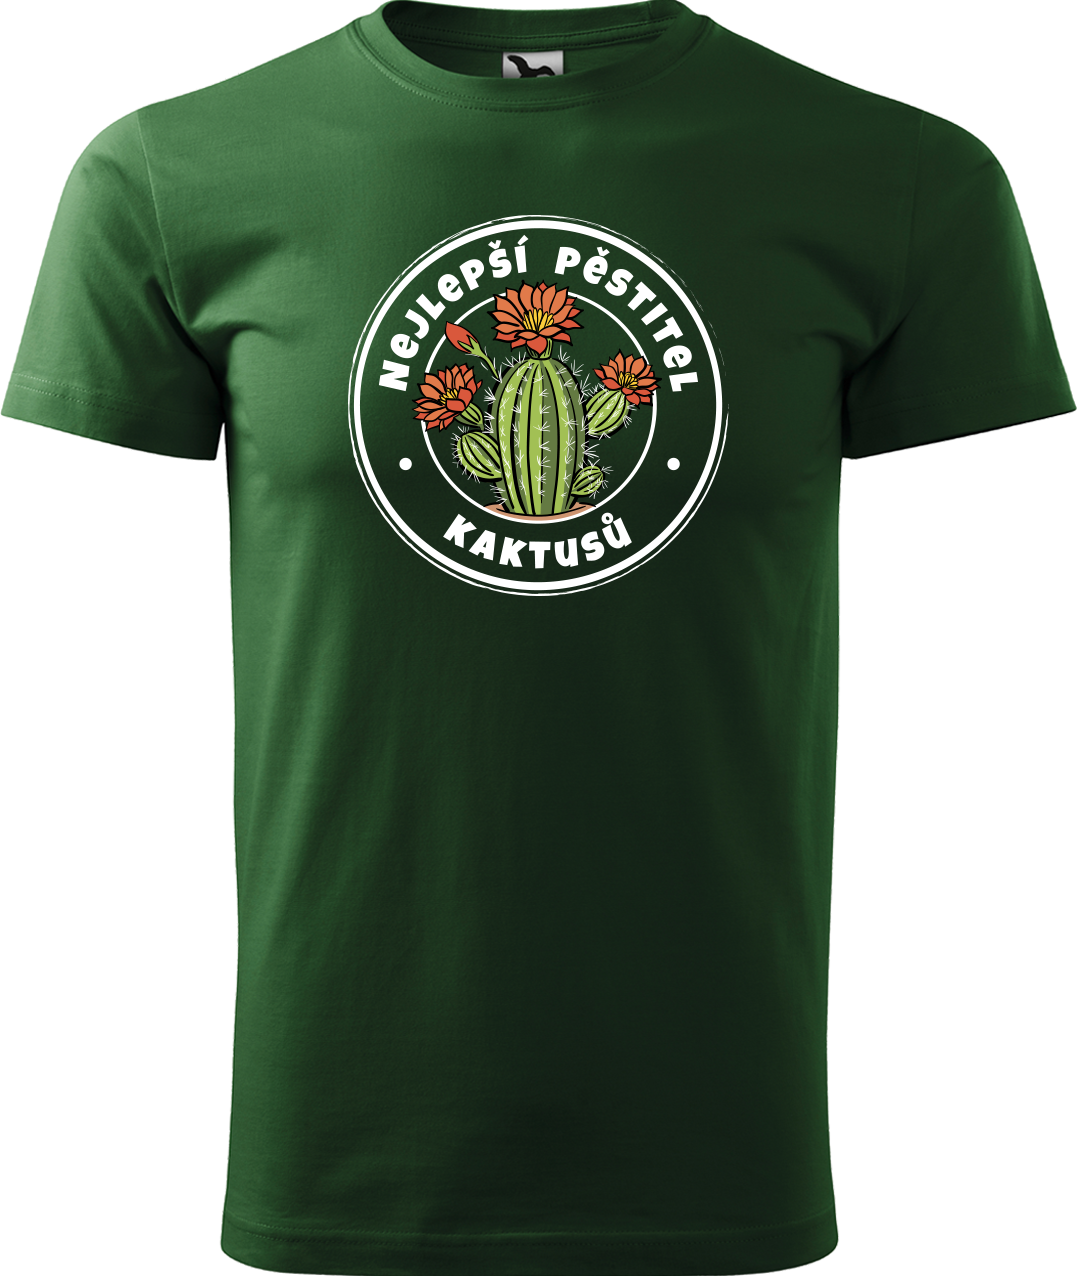 Tričko s kaktusem - Nejlepší pěstitel kaktusů Velikost: M, Barva: Lahvově zelená (06)